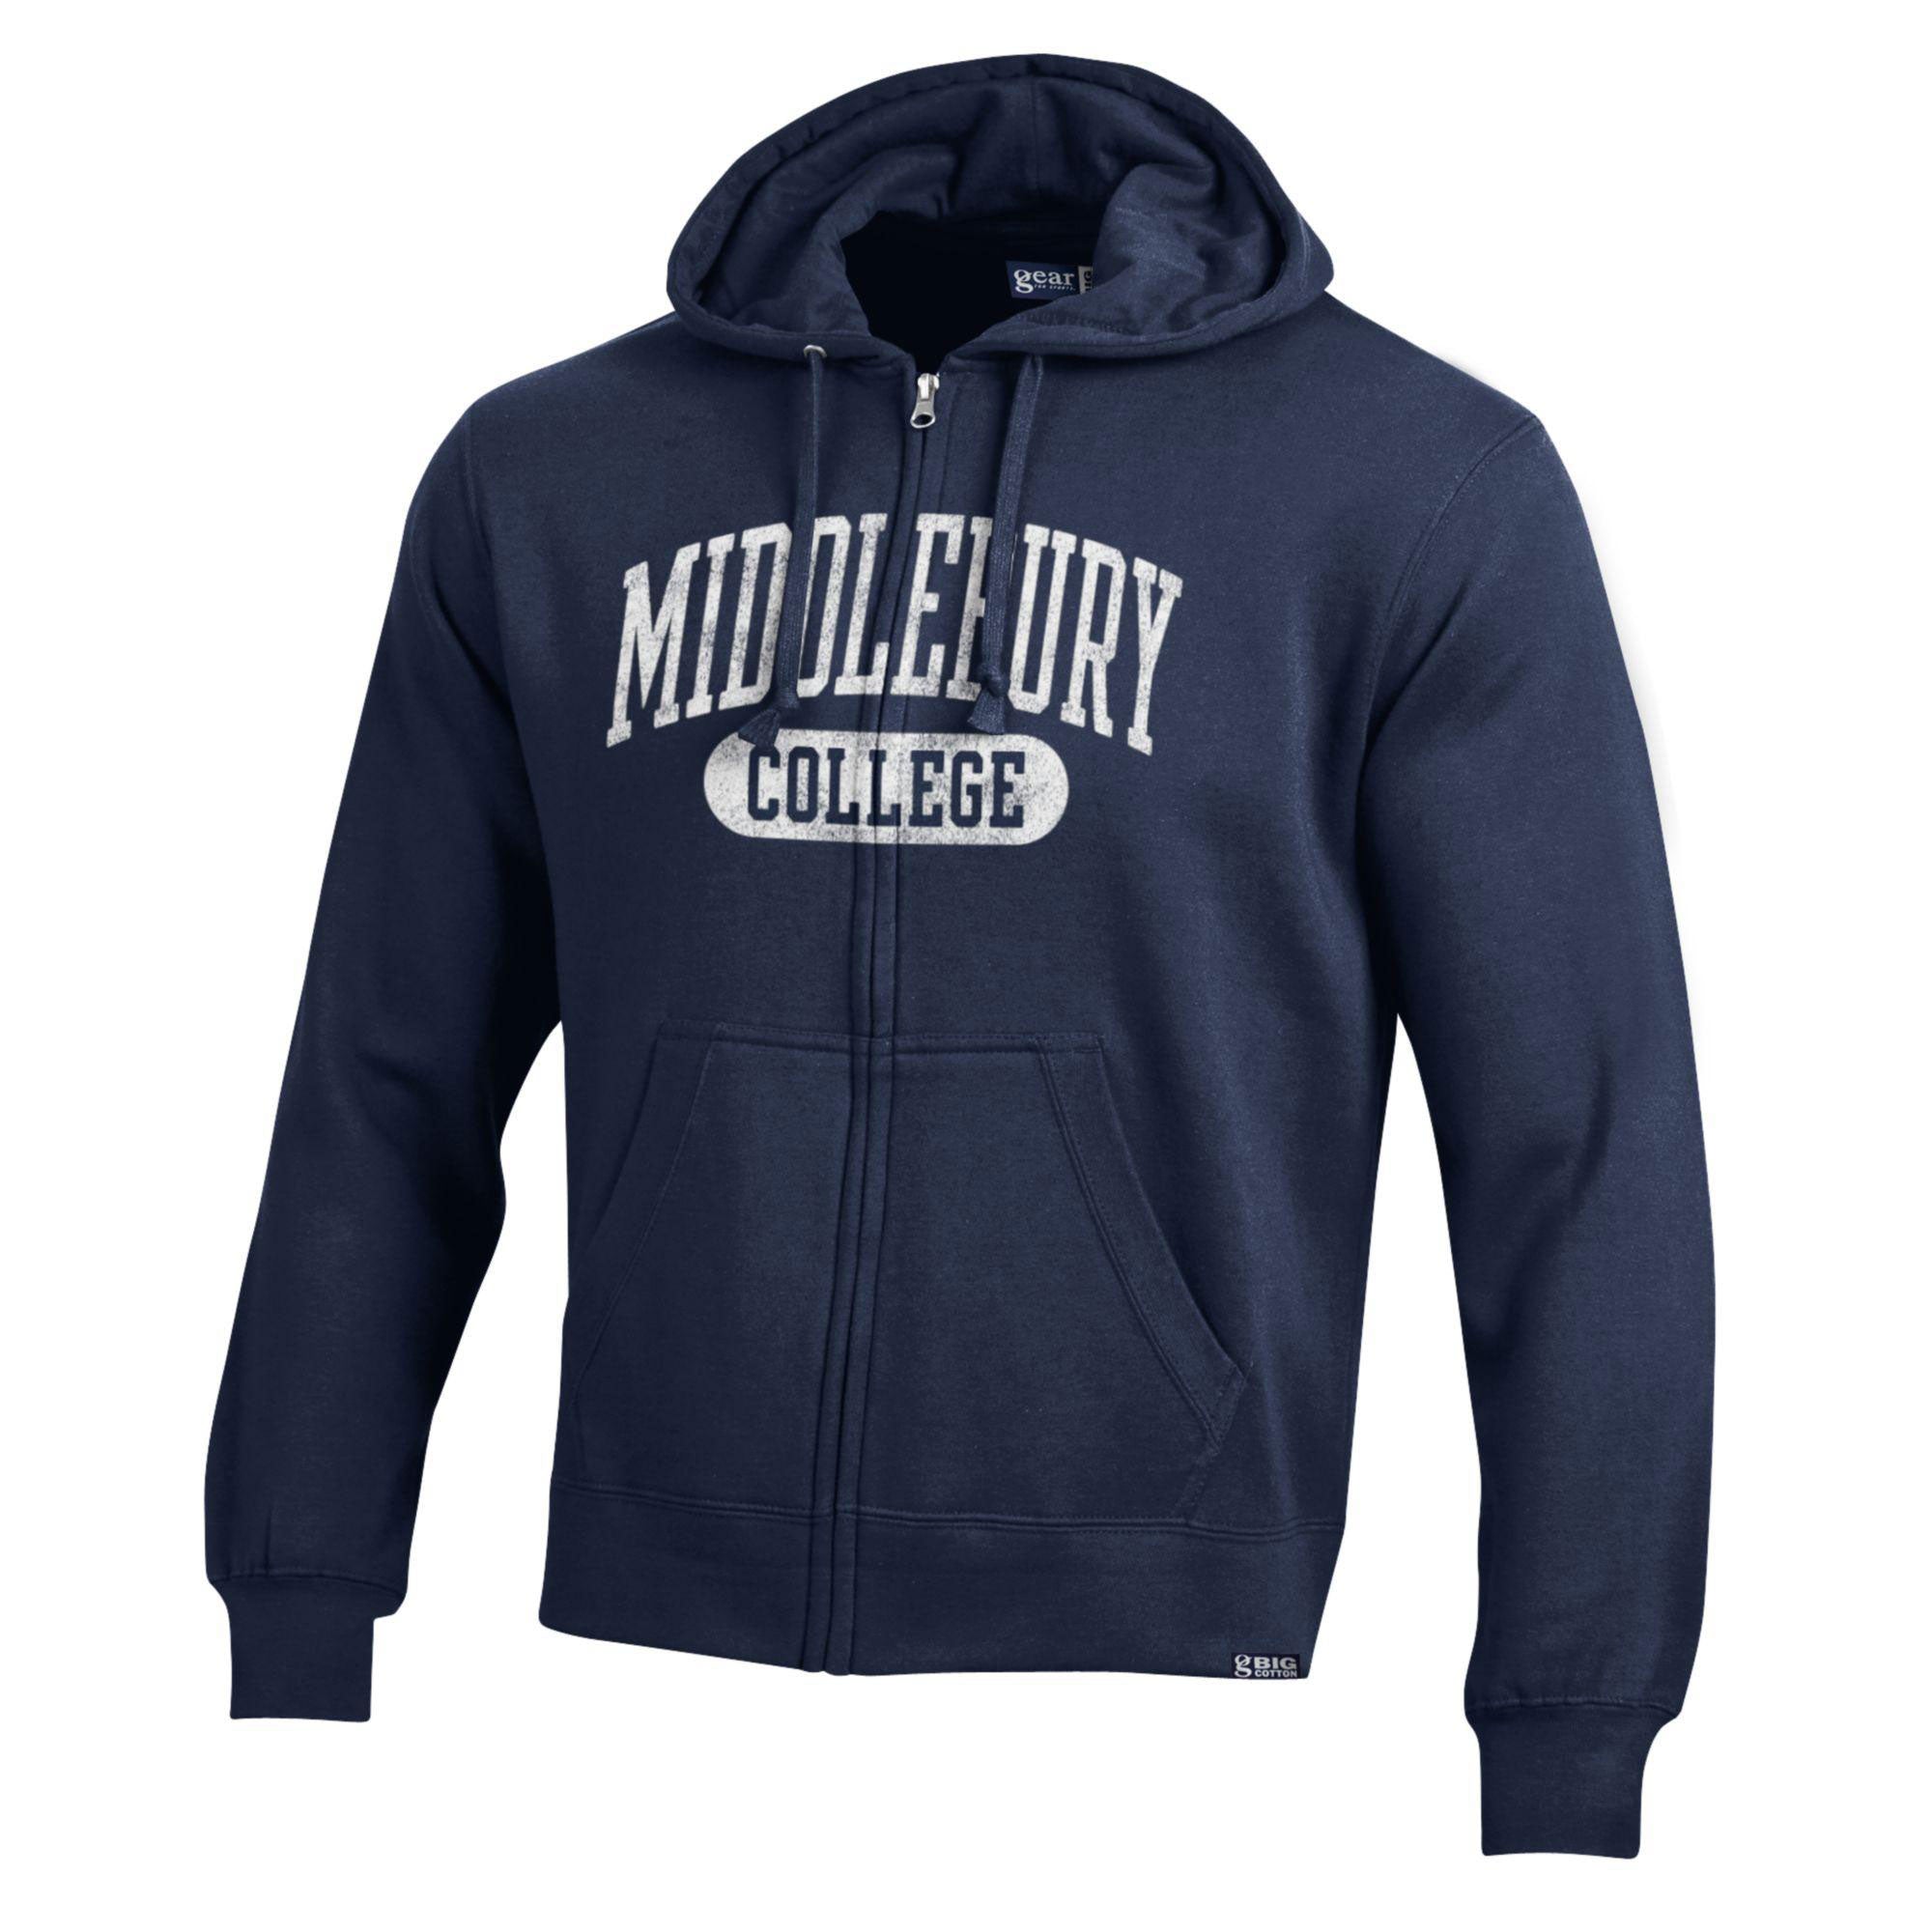 Middlebury "Big Cotton" Zip Hooded Sweatshirt (Navy)